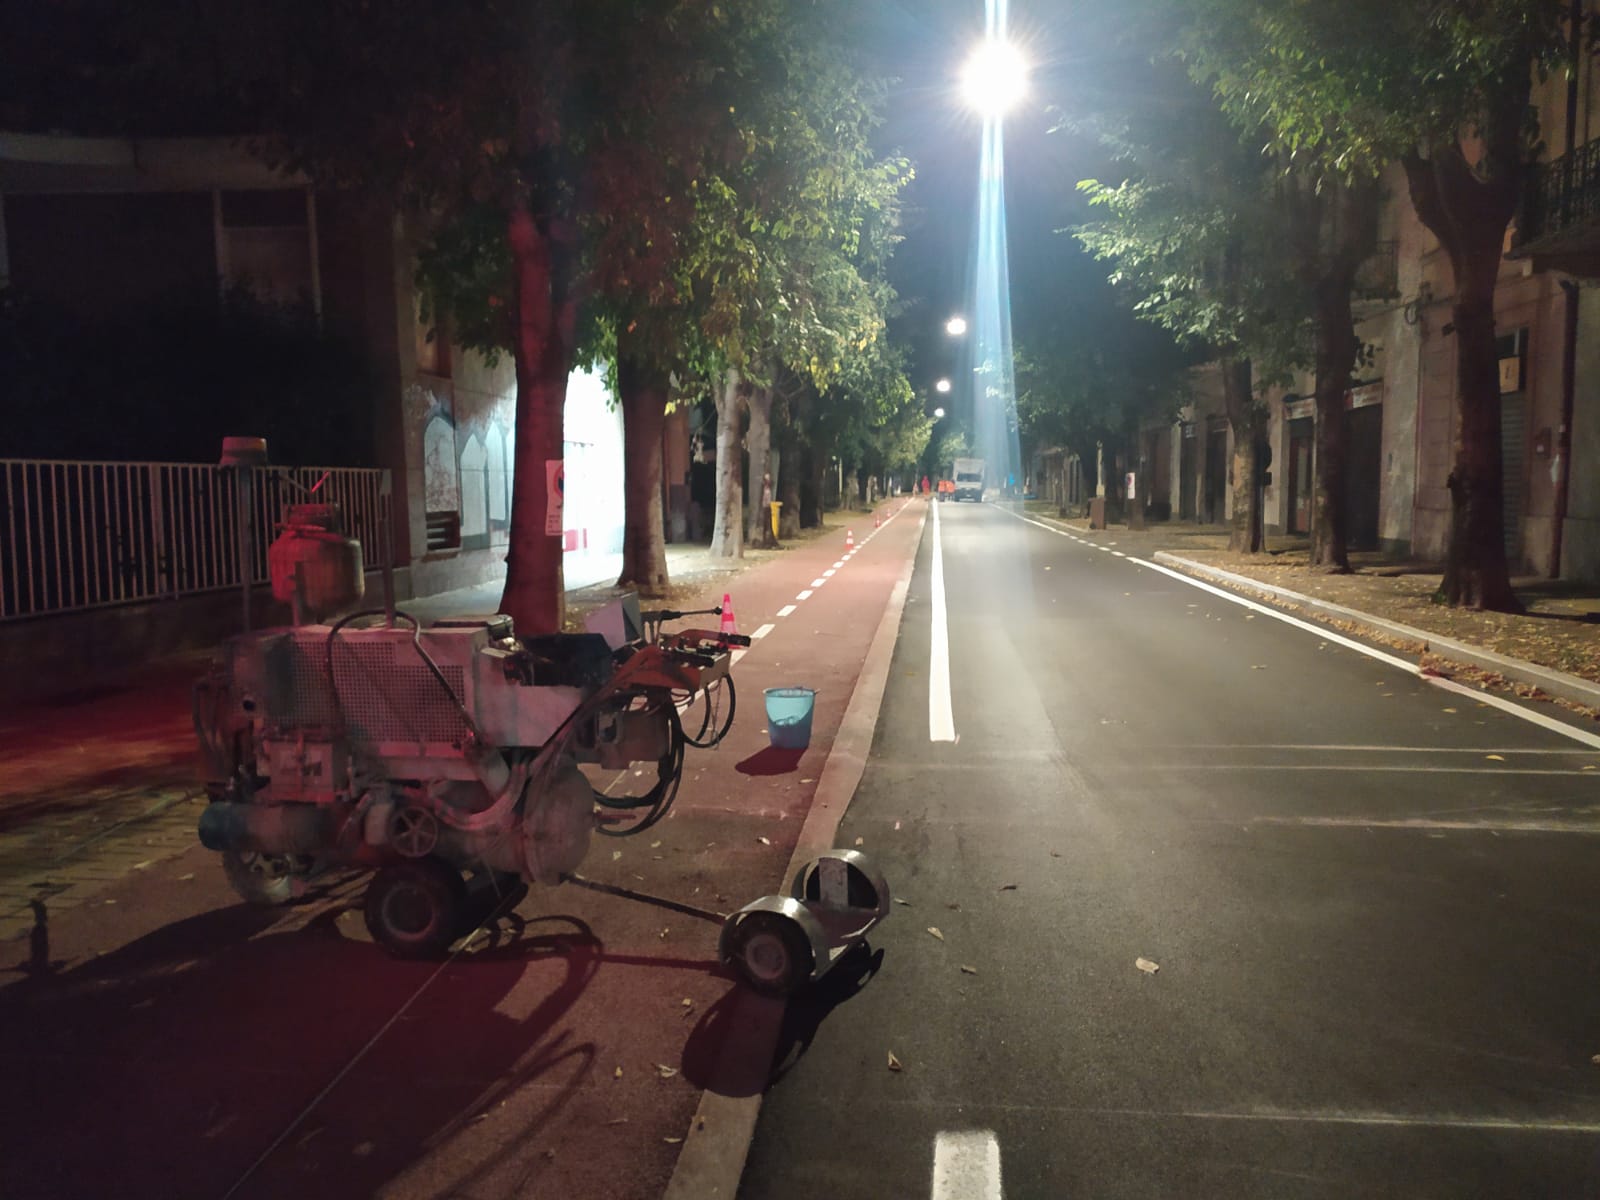 Notte di lavoro in via Roma a Saronno: ecco la segnaletica sulla ciclabile (foto)